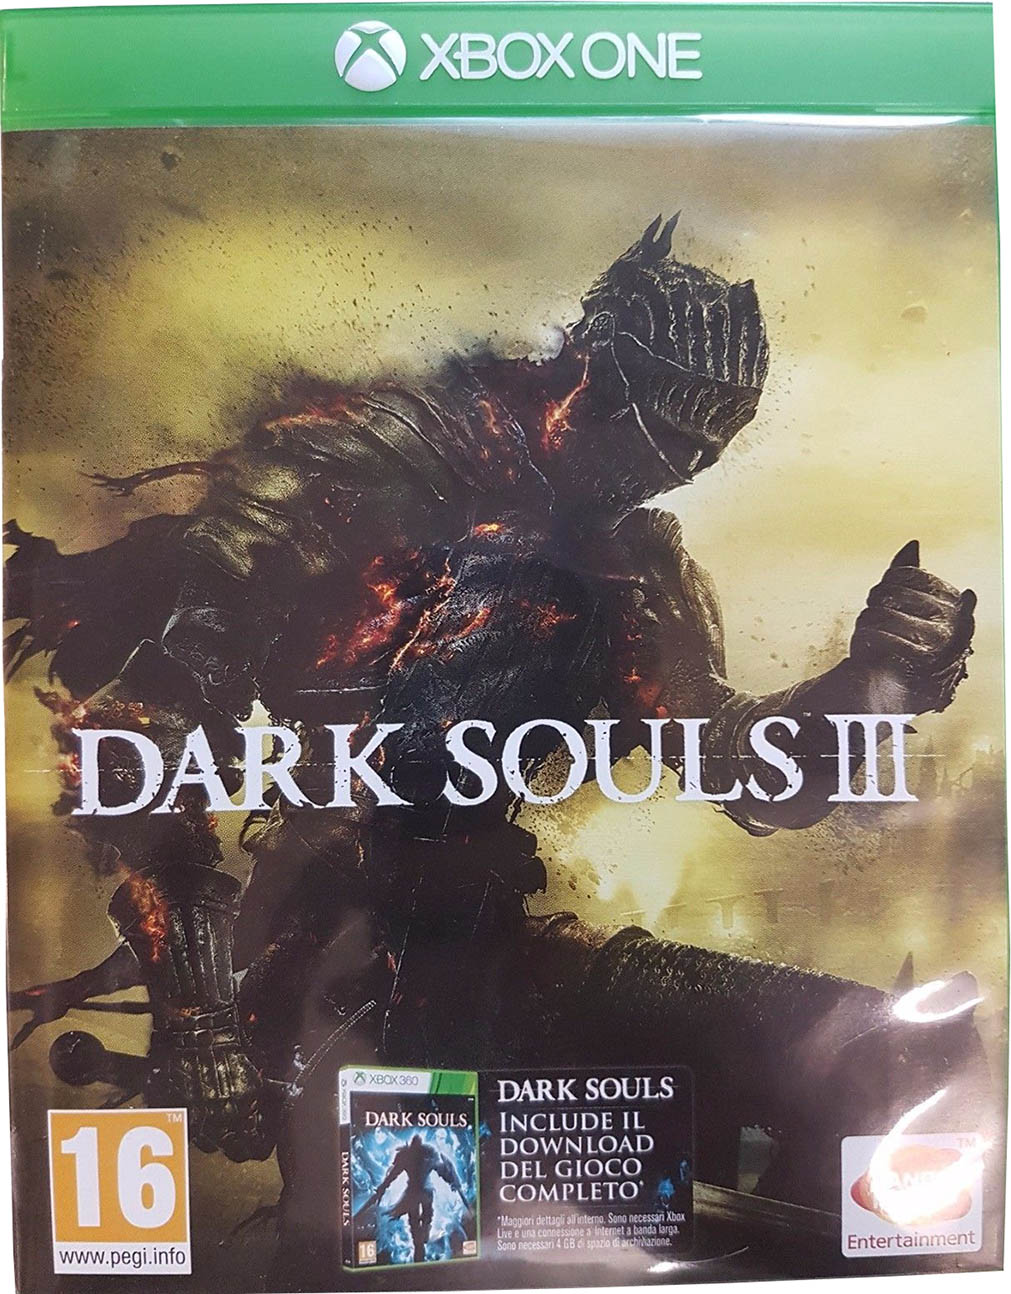 Dark Souls III Xbox One издание в Италии